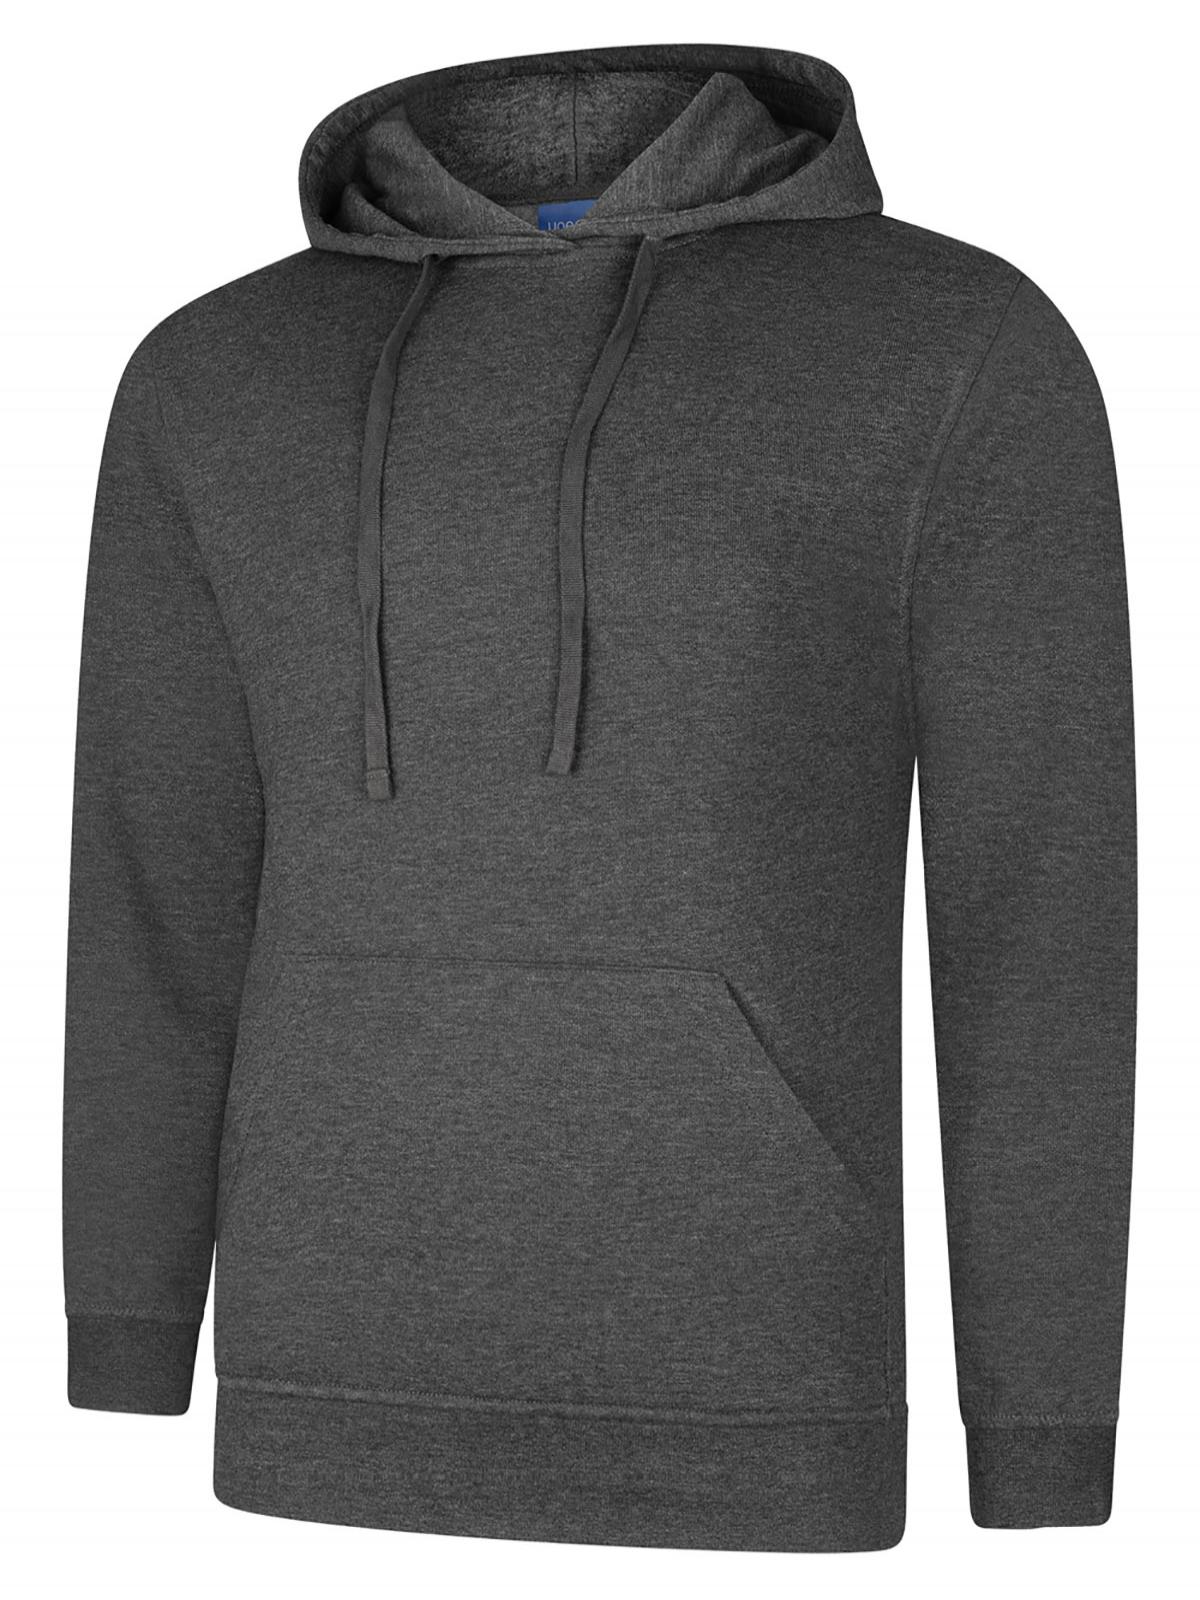 Uneek Deluxe Hooded Sweatshirt UC509 - Charcoal